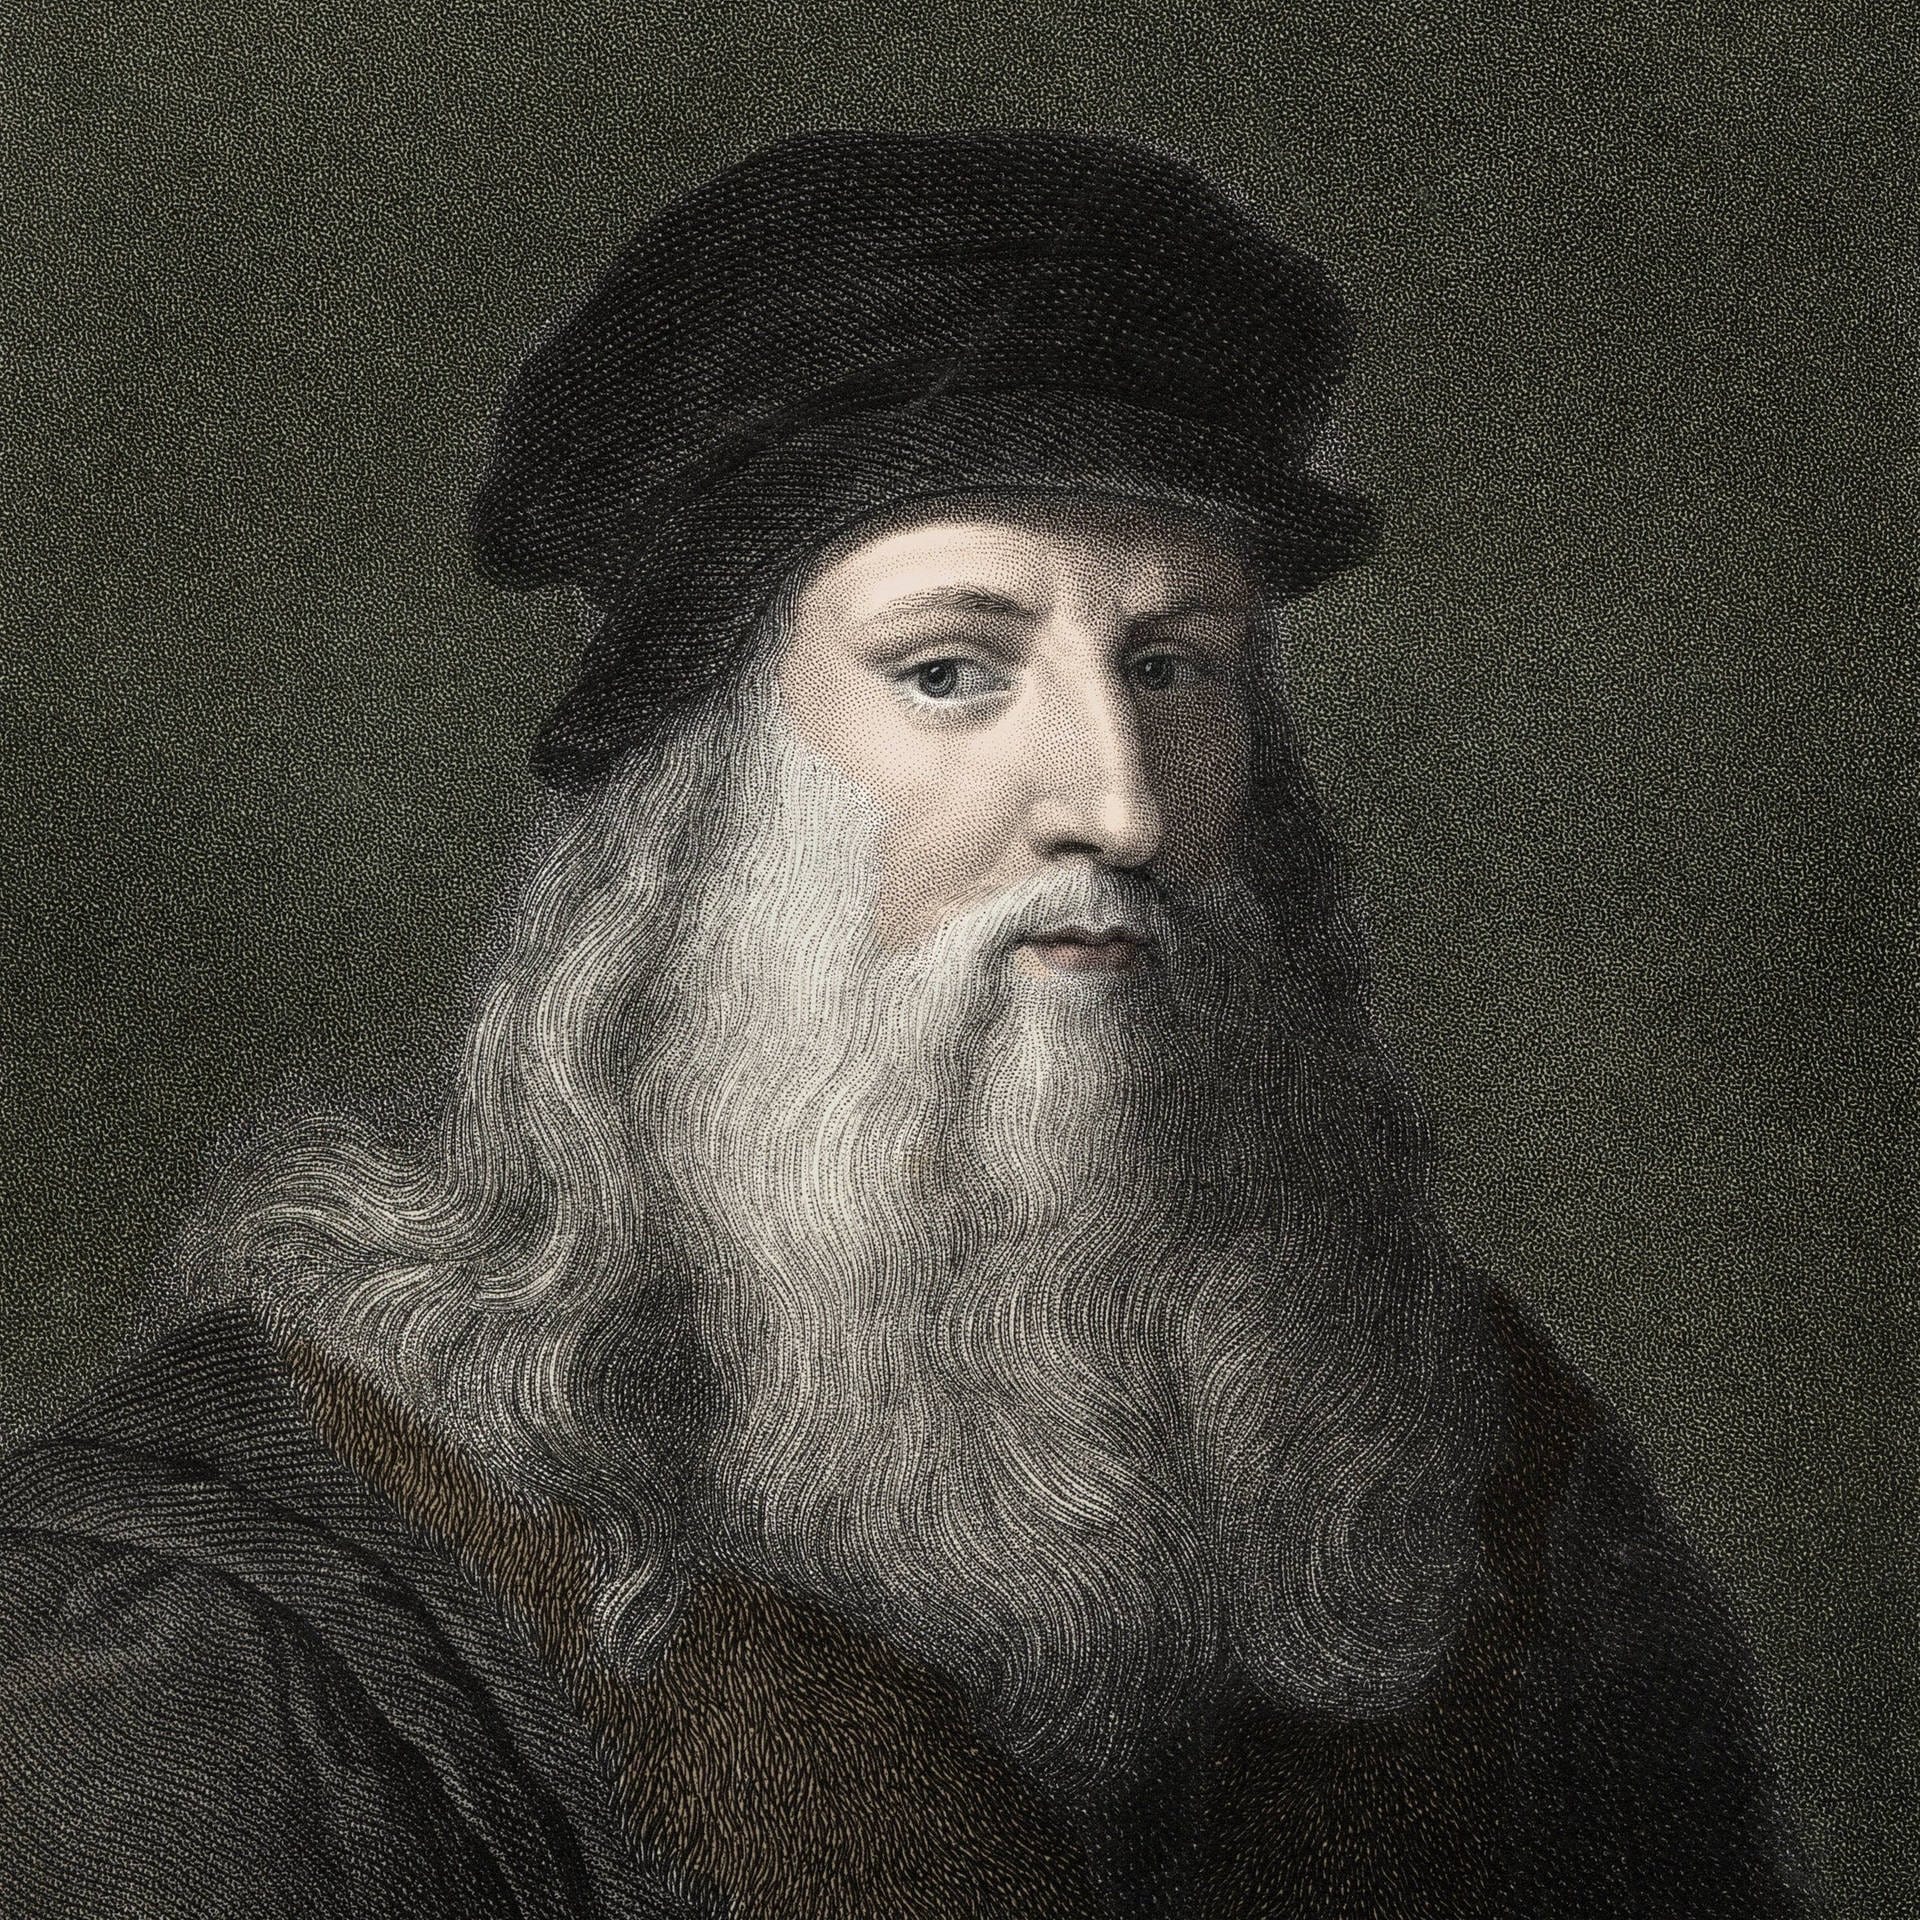 Zeichnend die Welt verstehen – Leonardo da Vincis Naturphilosophie